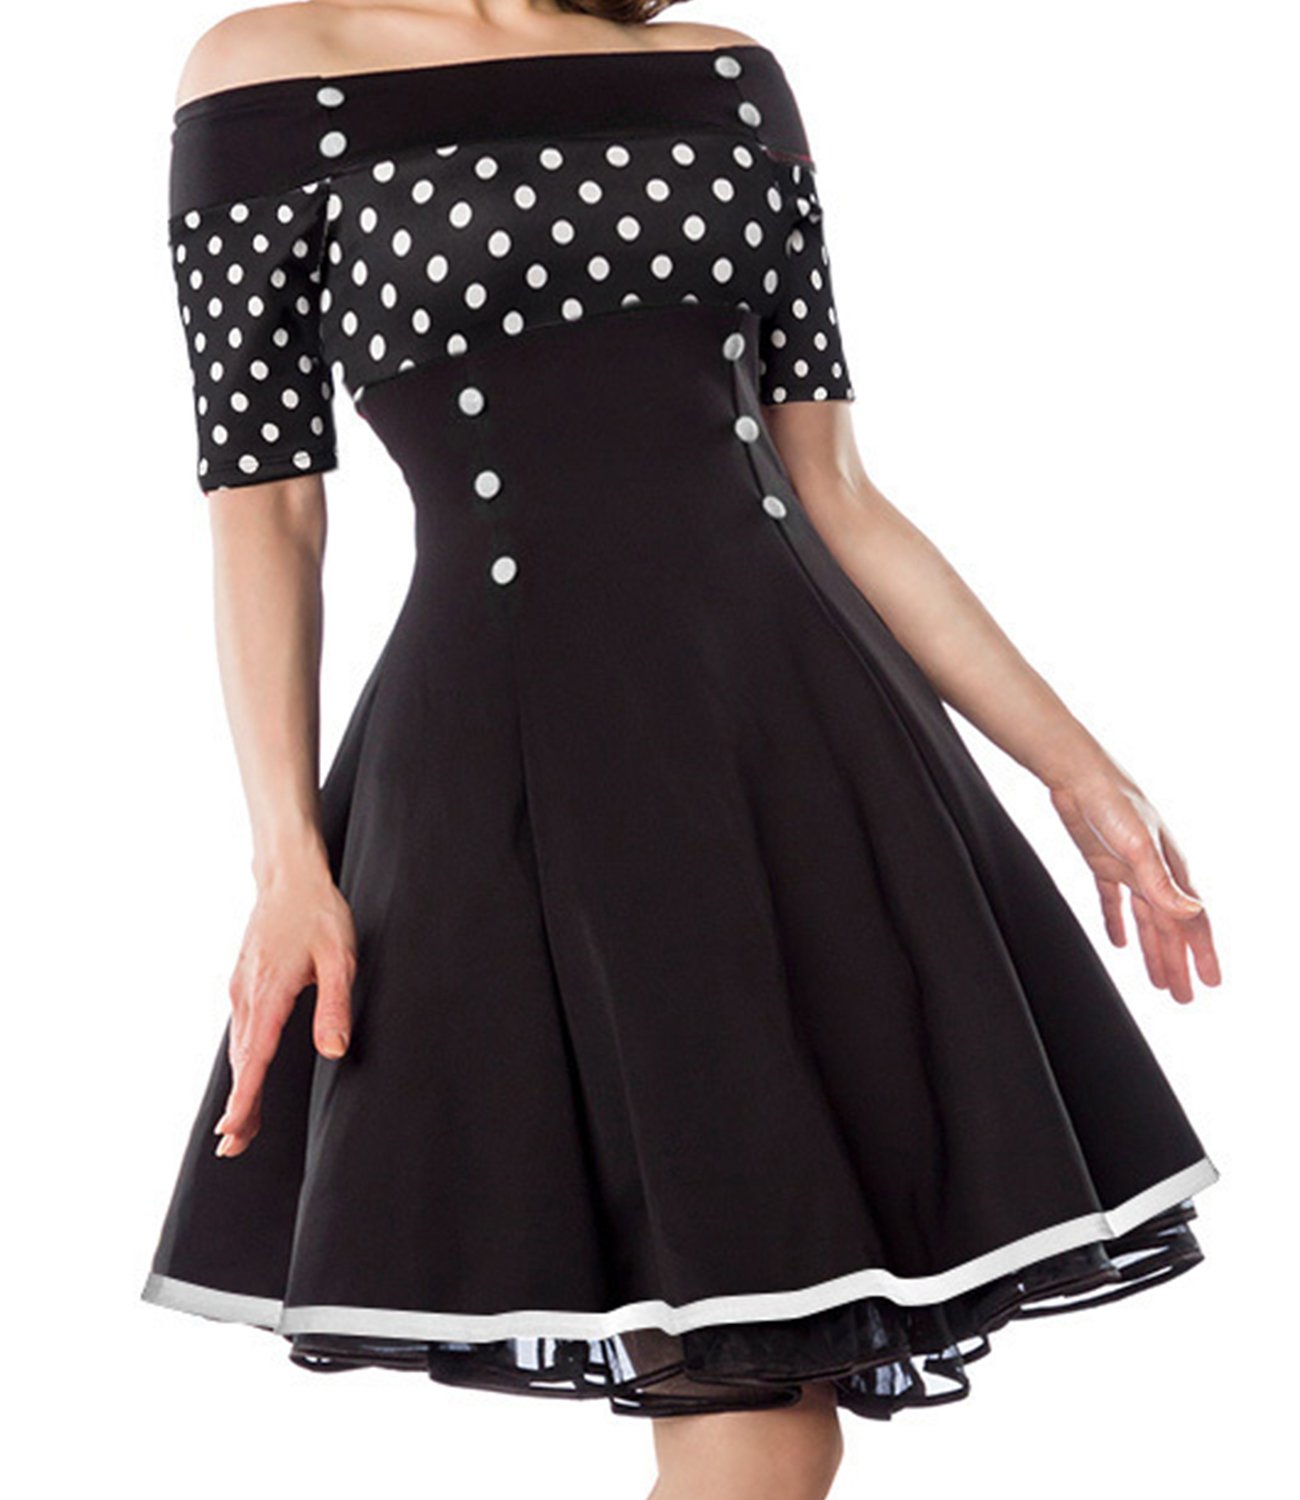 Belsira Vintage-Kleid - schwarz/Weiss/dots, Gr??e:S